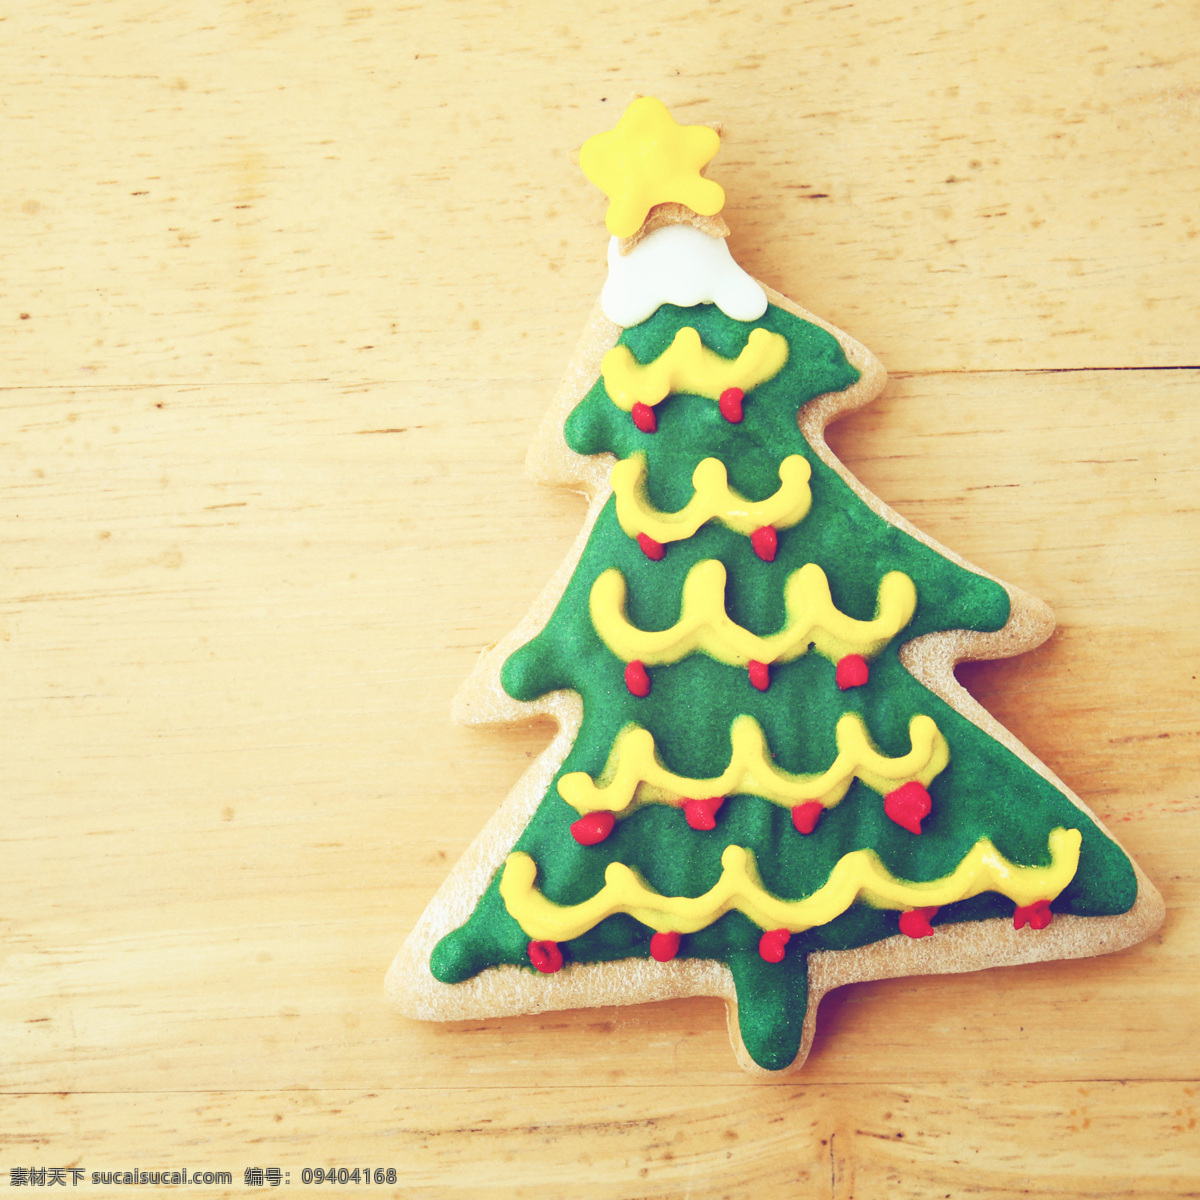 圣诞 树状 姜饼 圣诞树状 饼干 圣诞食物 美食 其他类别 餐饮美食 黄色